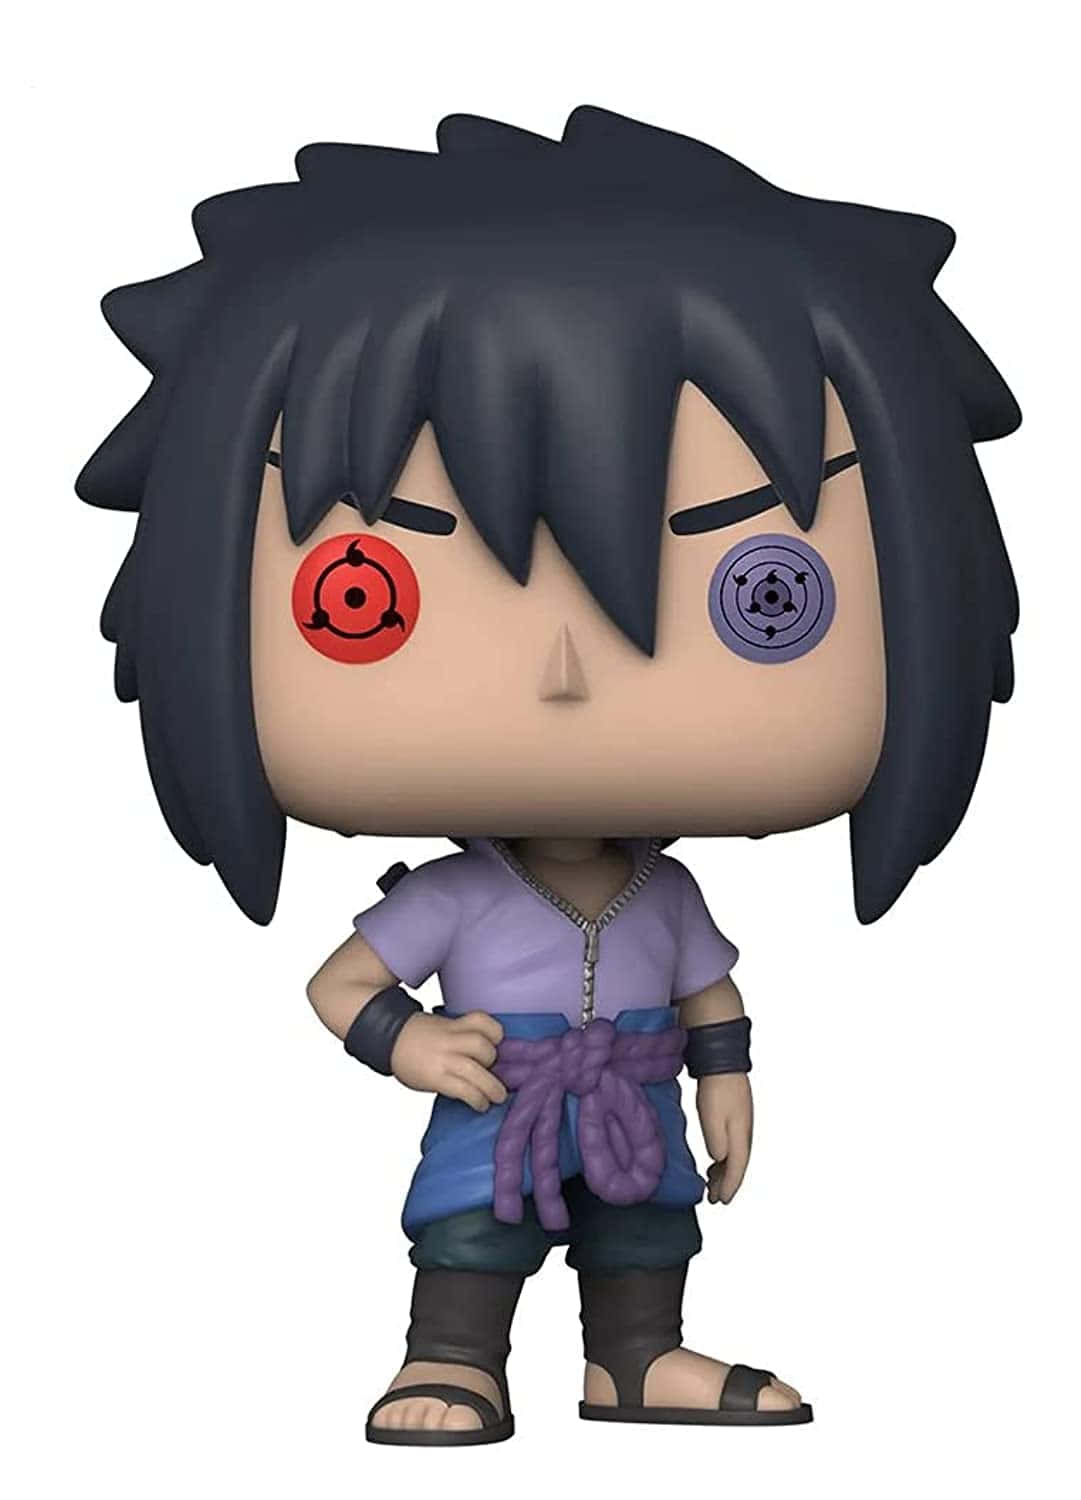 Sasuke Uchiha, a highly skilled Shinobi of Konoha.